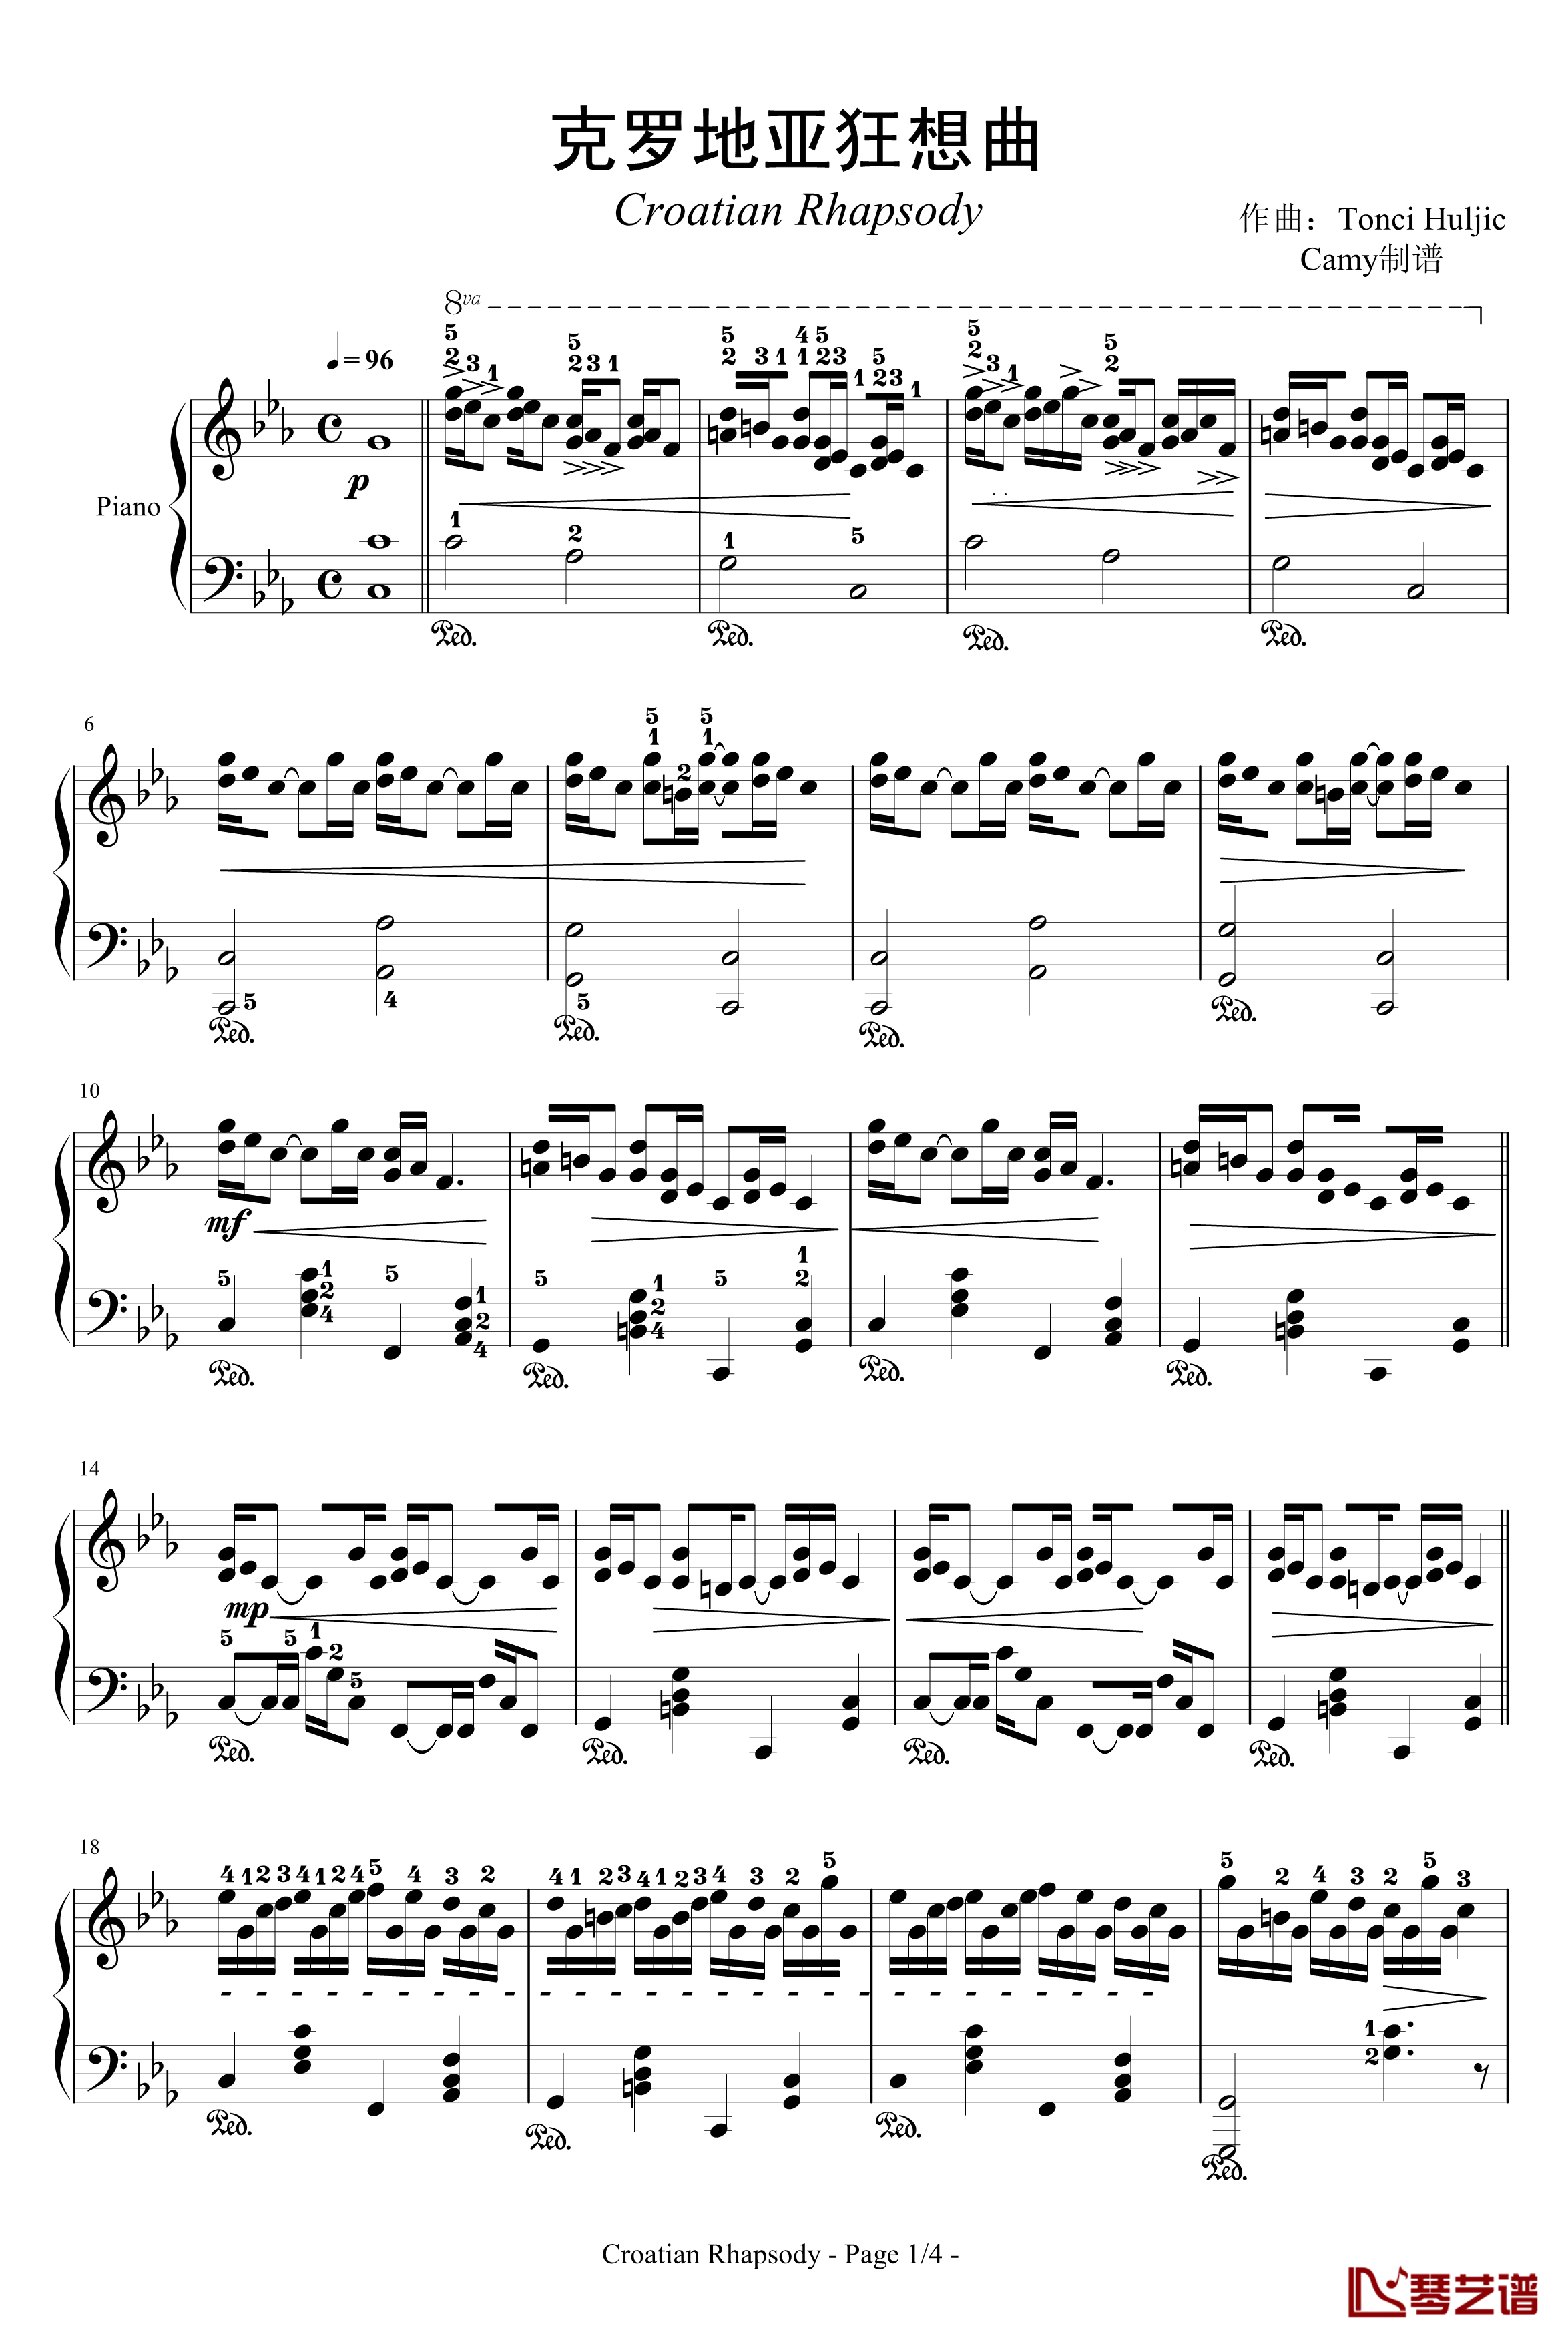 克罗地亚狂想曲钢琴谱-带指法-马克西姆-Maksim·Mrvica1